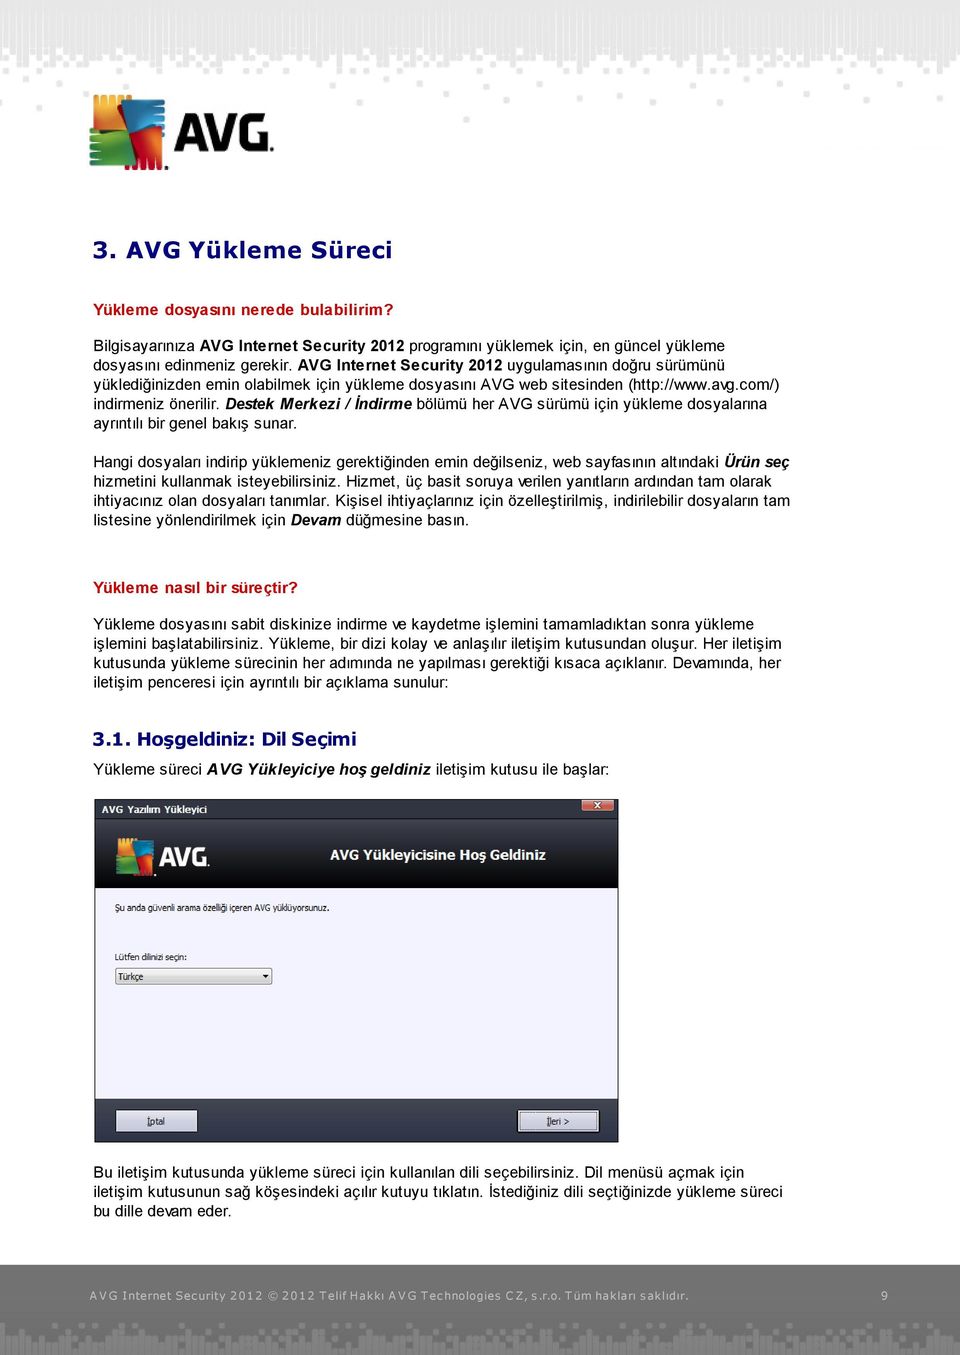 Destek Merkezi / İndirme bölümü her AVG sürümü için yükleme dosyalarına ayrıntılı bir genel bakış sunar.